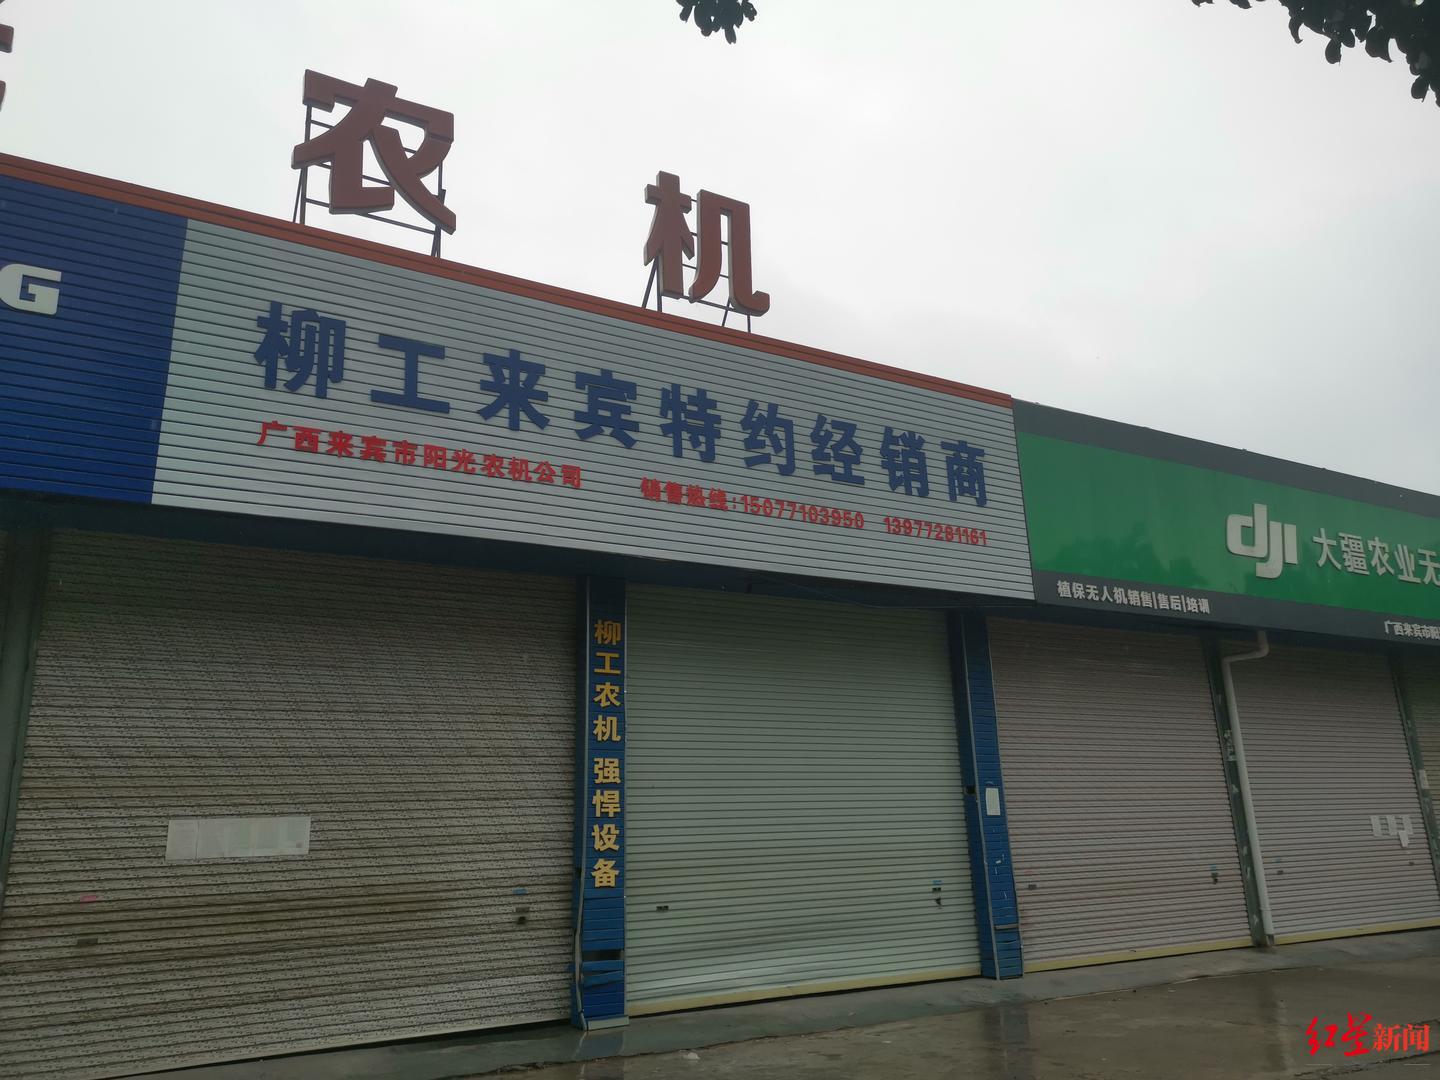 ▲锦达农机市场内大批关闭的商铺